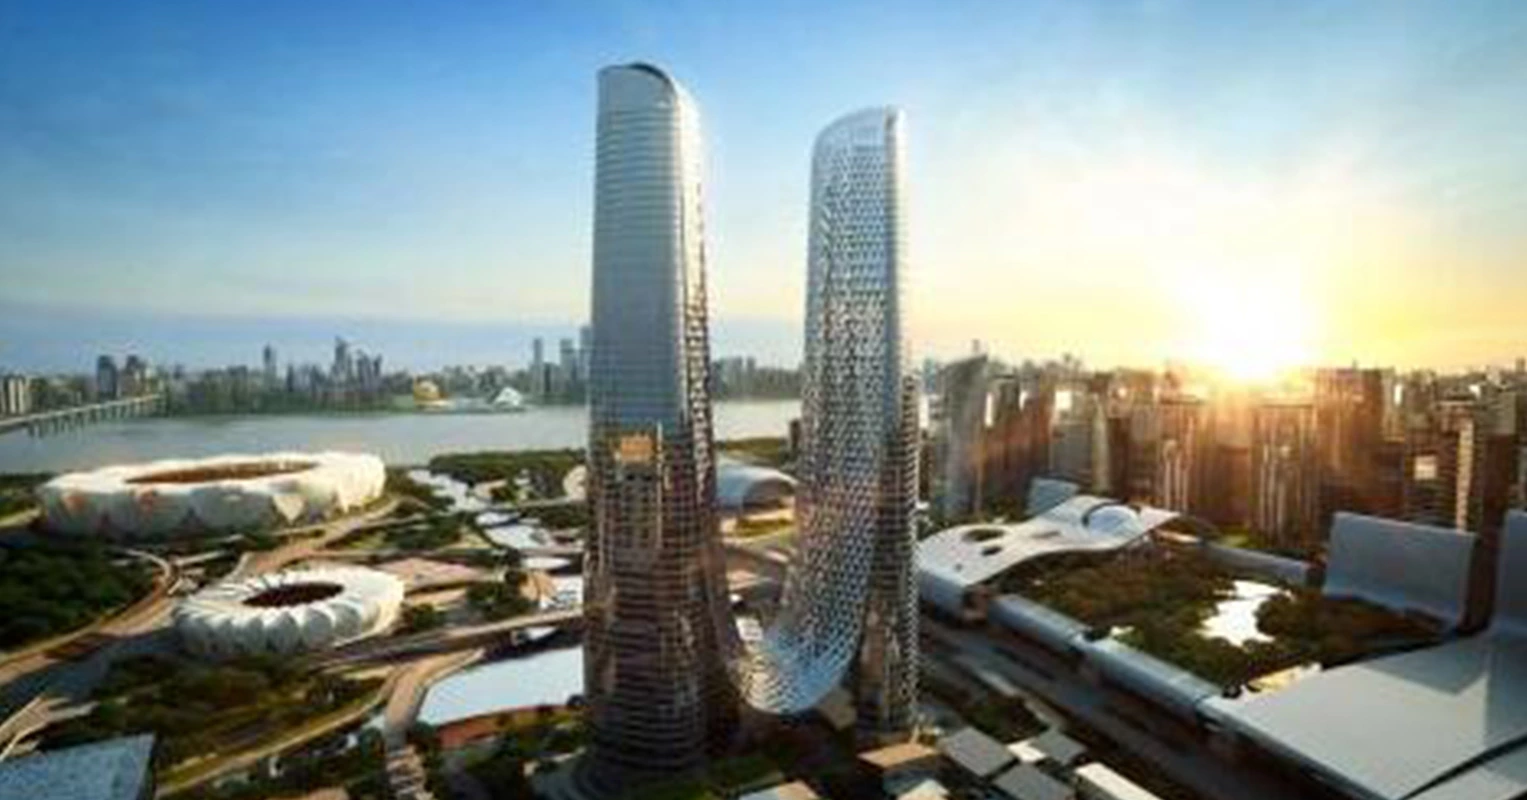 Продукция Supmea используется в самом высоком здании Ханчжоу.